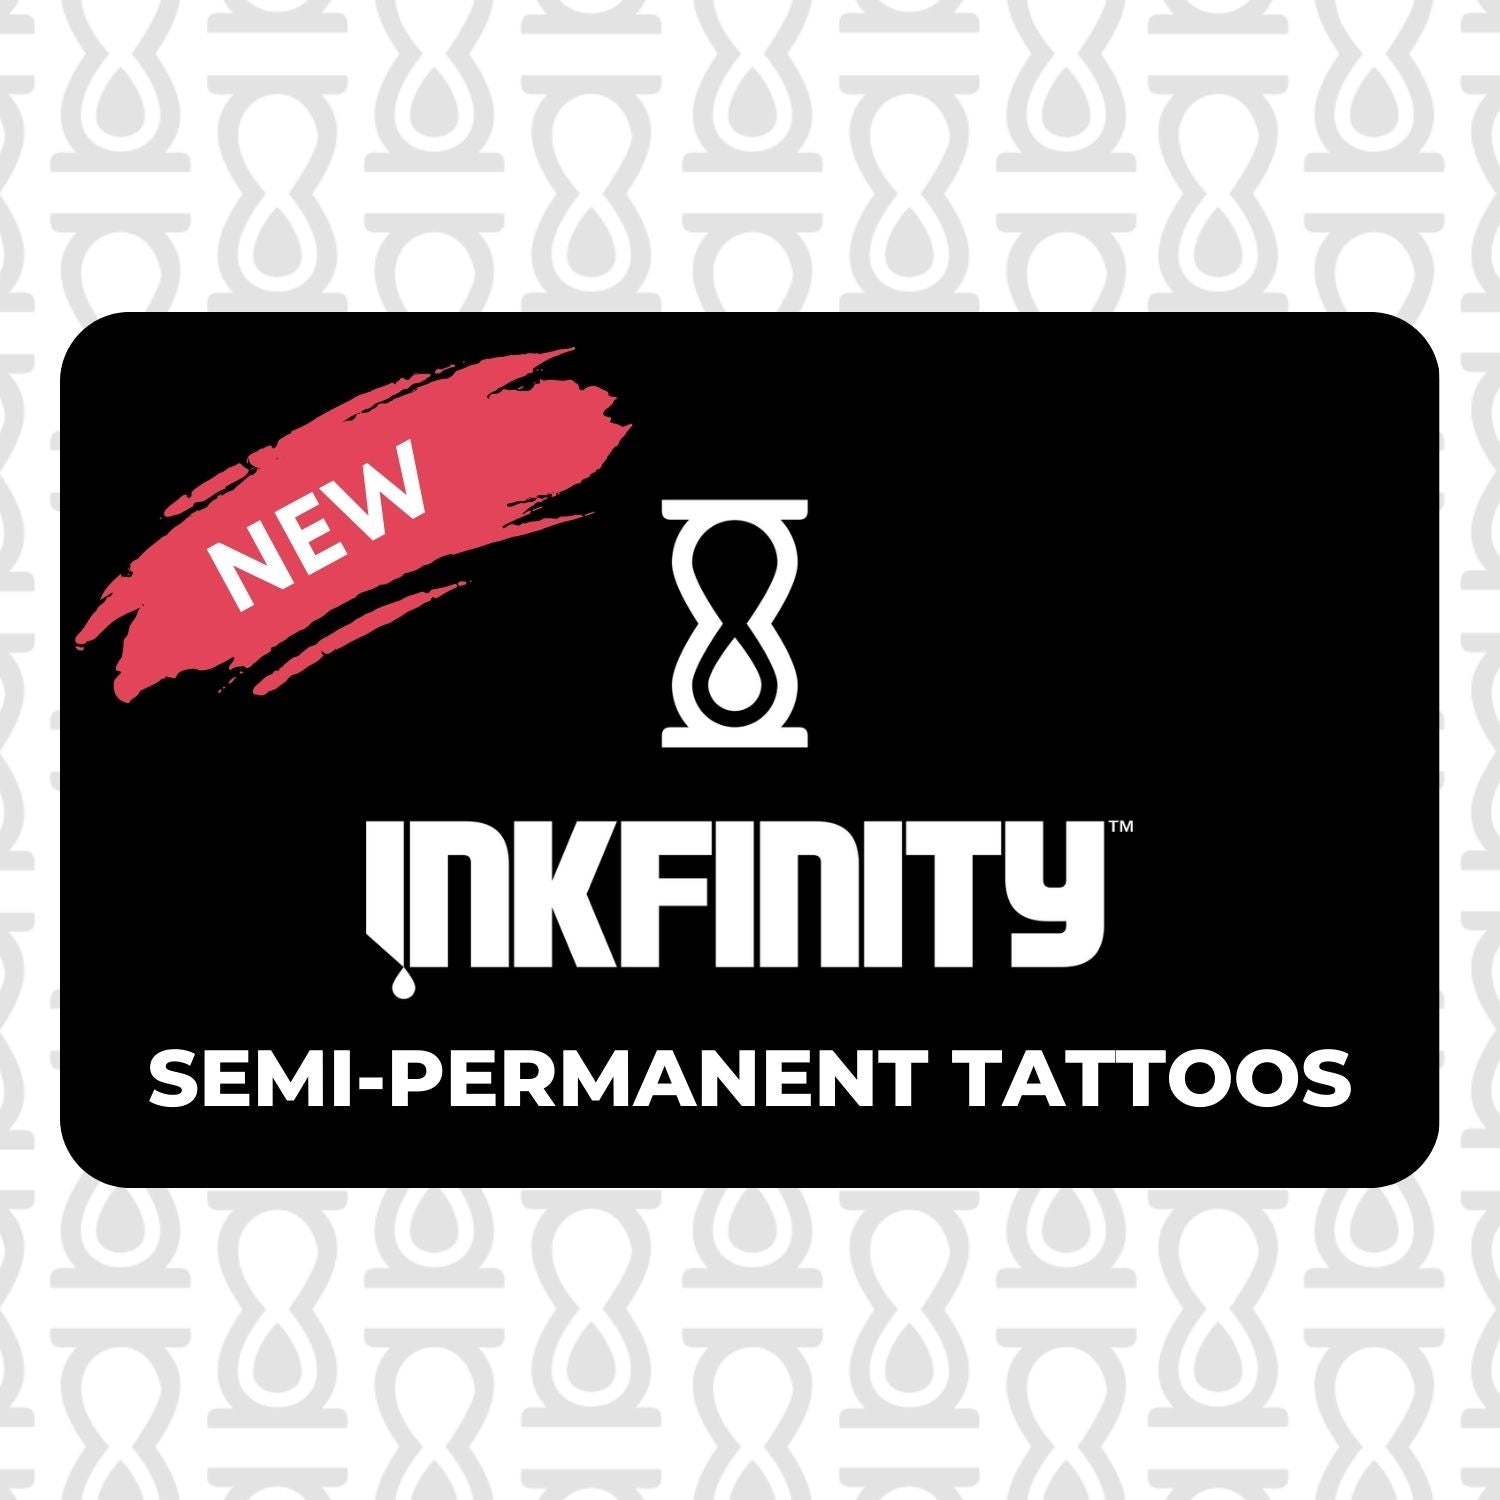 Semi-Permanent Tattoos